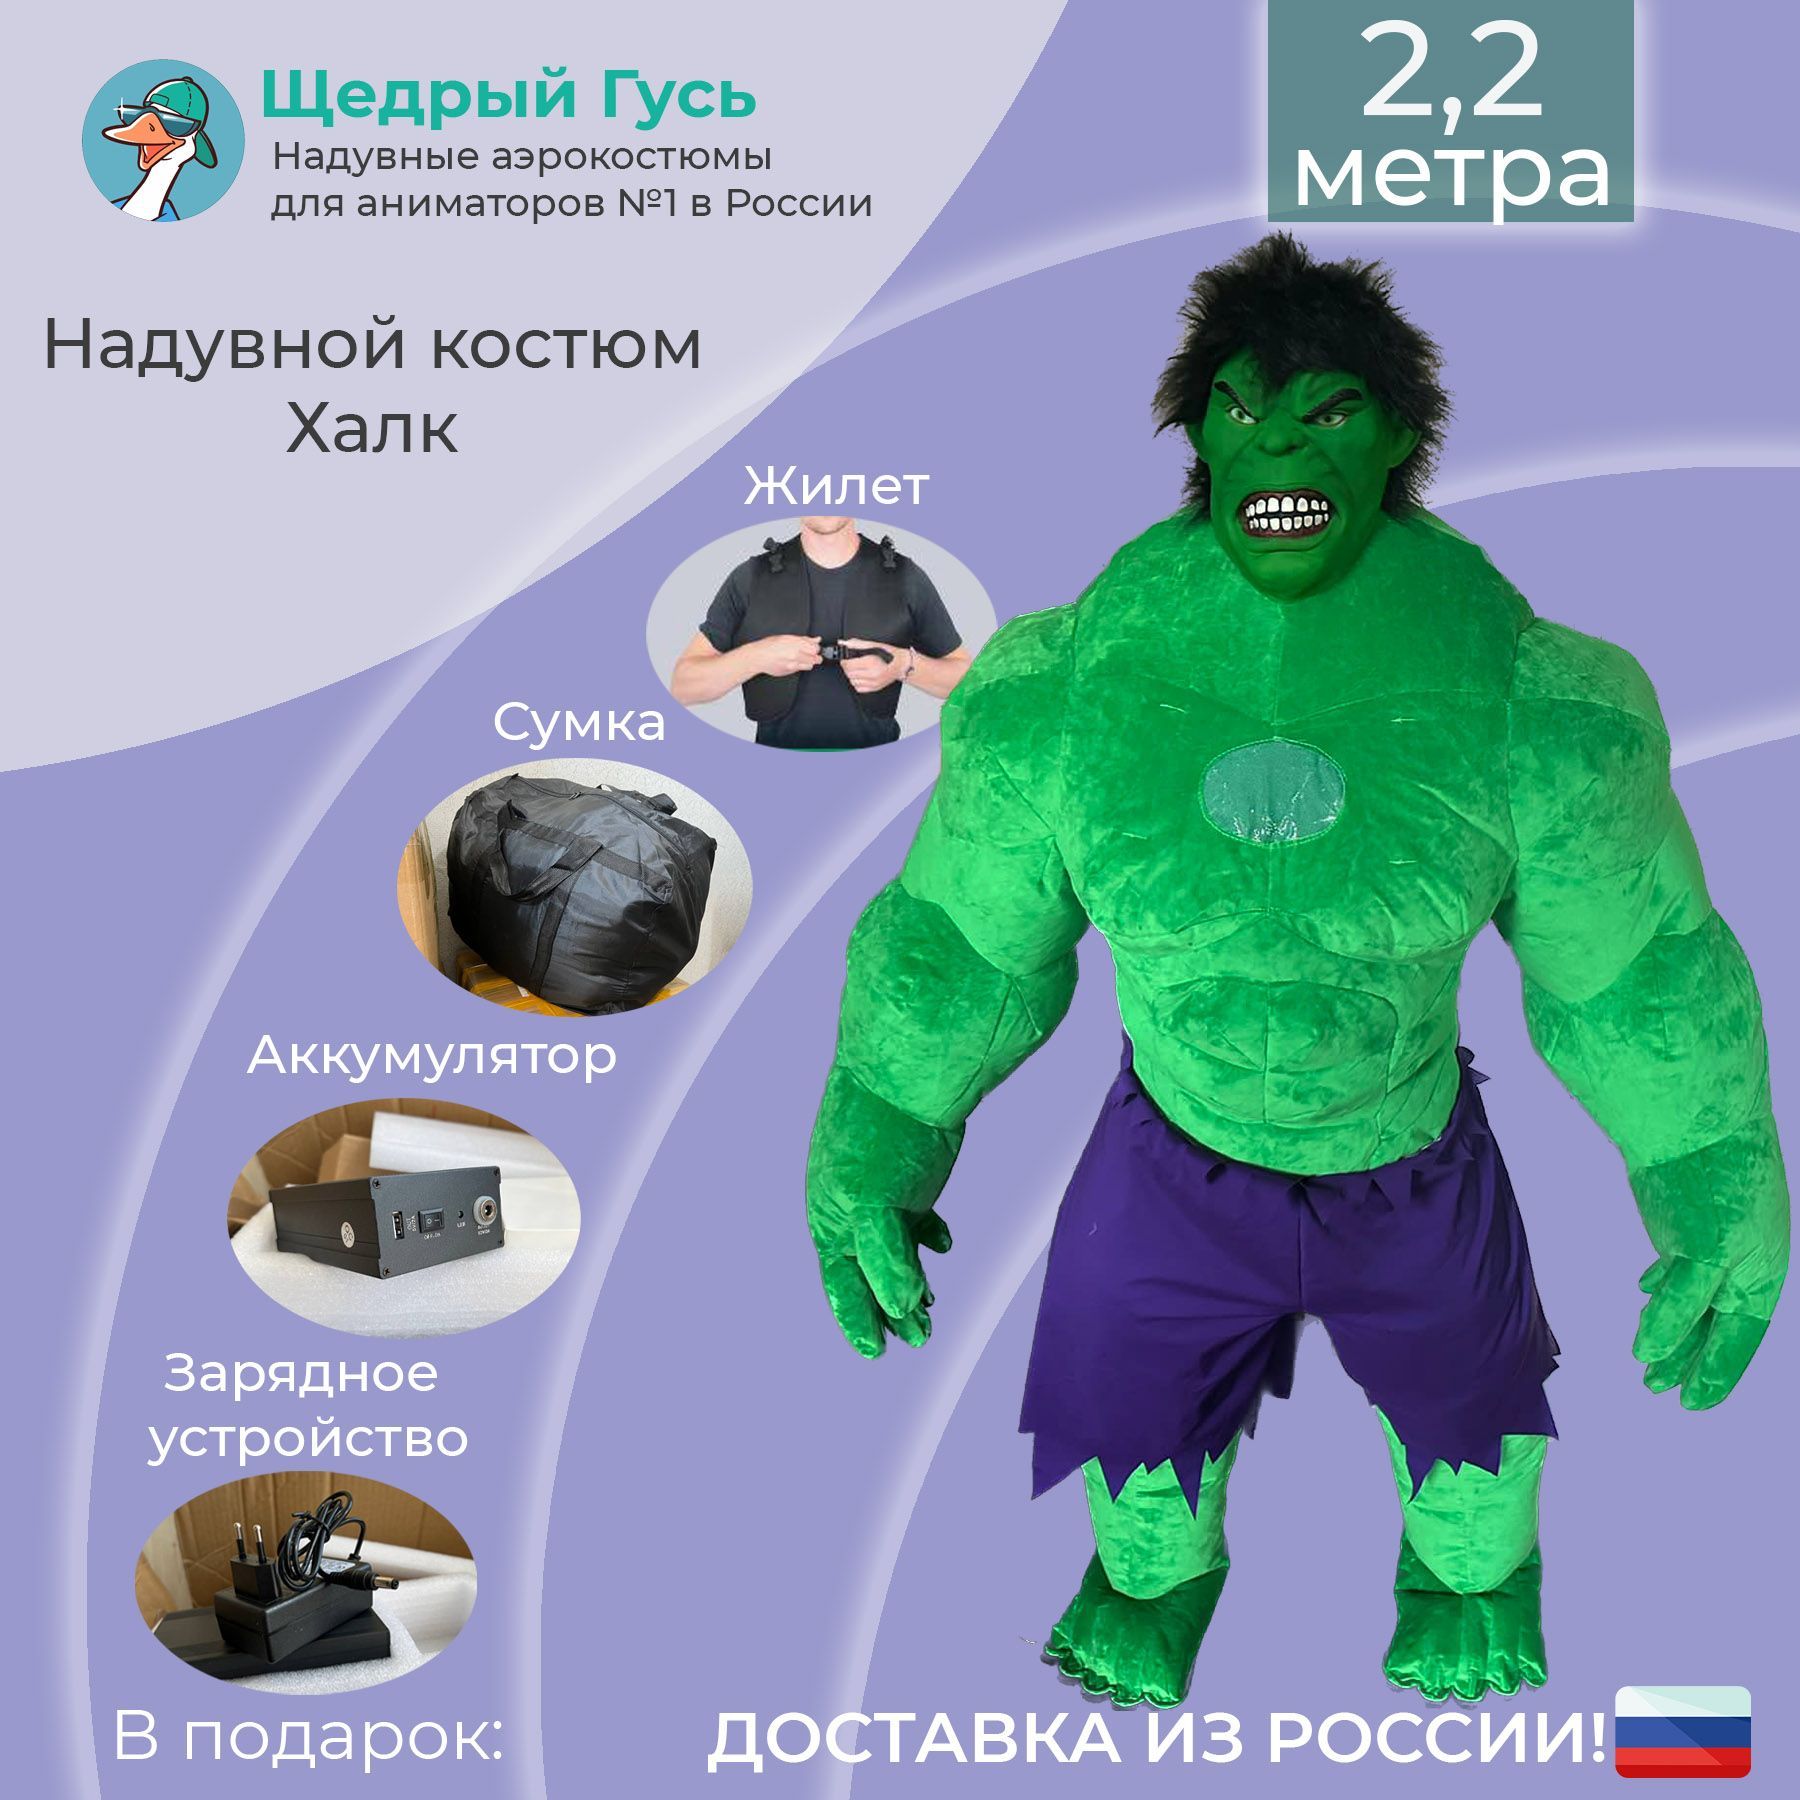 Купить детский карнавальный костюм гуся в Санкт-Петербурге: интернет-магазин АРЛЕКИН